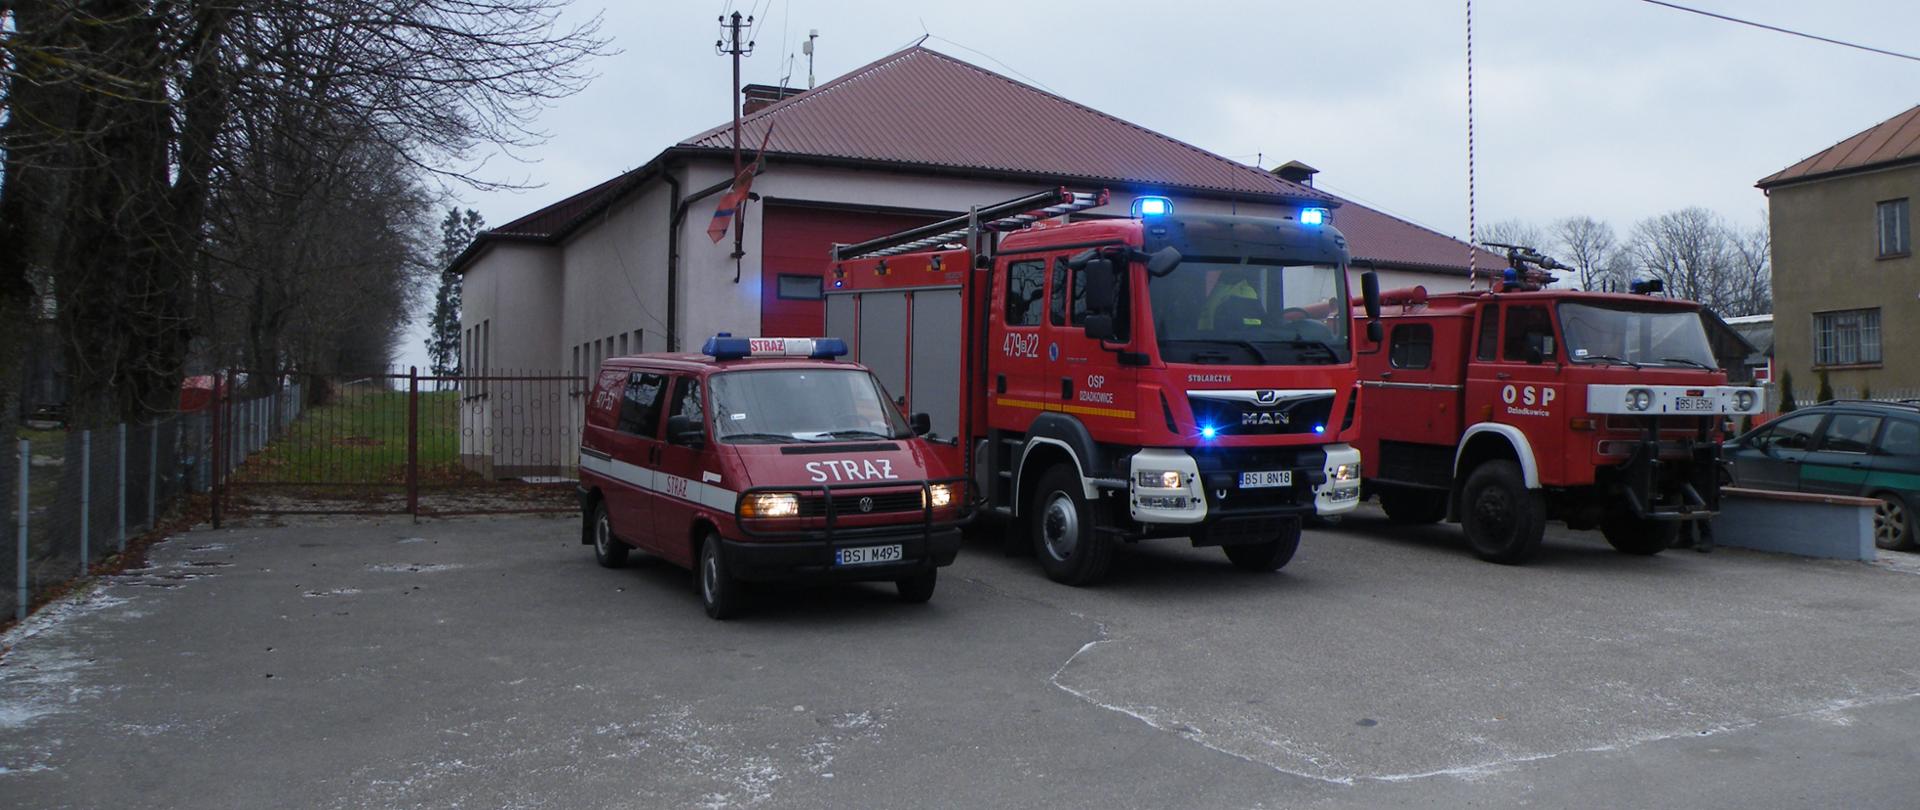 Zdjęcie strażnicy OSP w Dziadkowicach. Przed garażem stoją trzy pojazdy ratowniczo-gaśnicze.